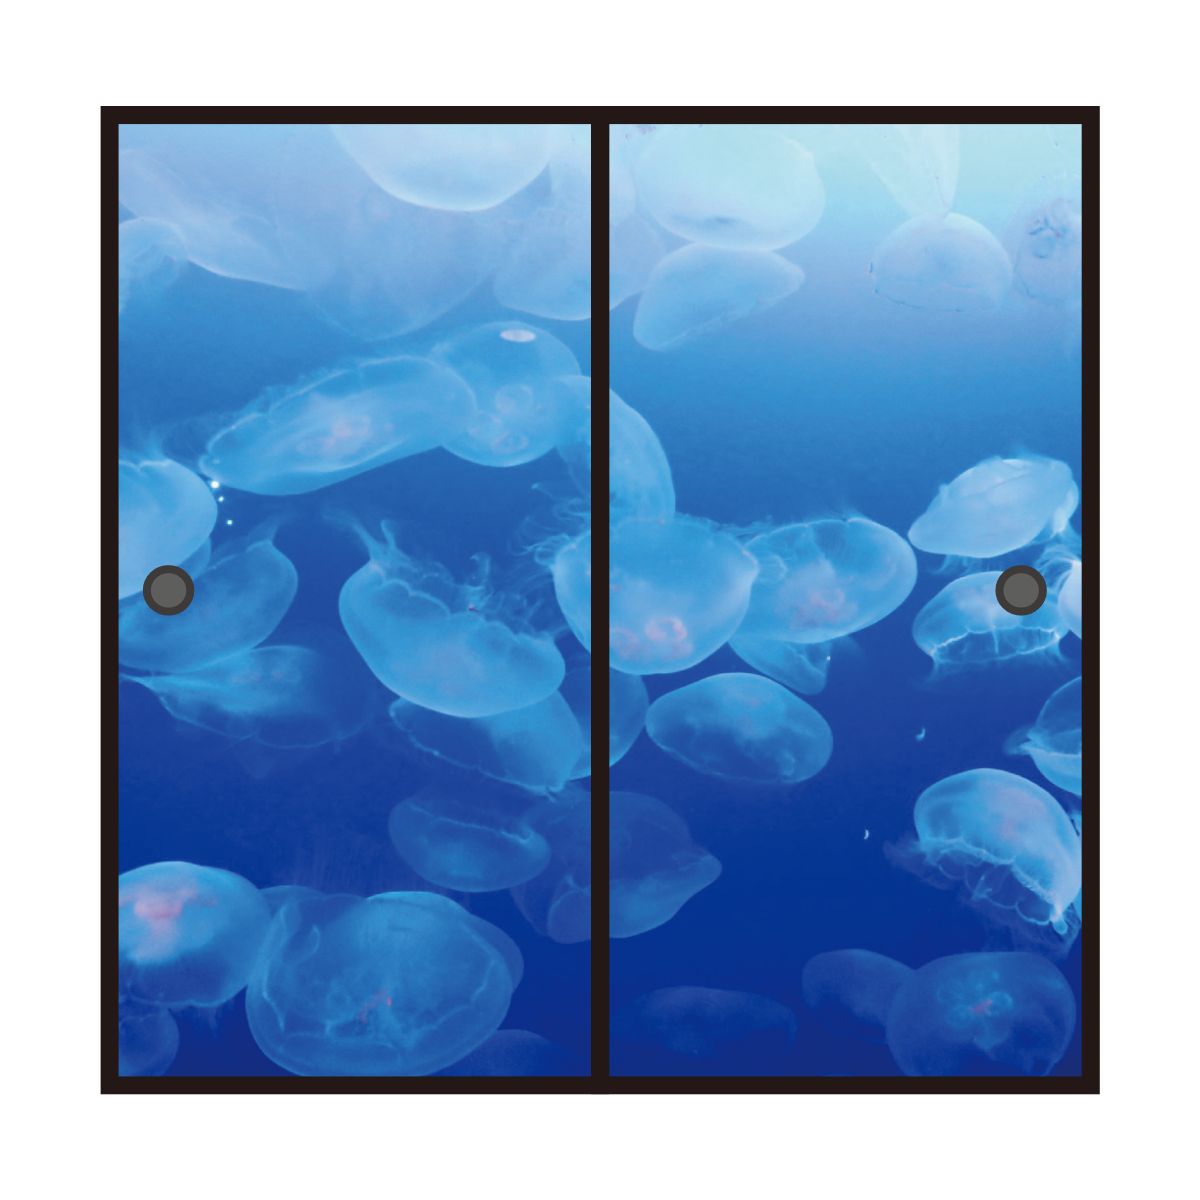 海模様 Jellyfish 襖紙 92cm×182cm 2枚入り 水貼りタイプ アサヒペン 自然 海 水平線 波 柄 和室 洋室 洋風 モダン インテリア sea-06F